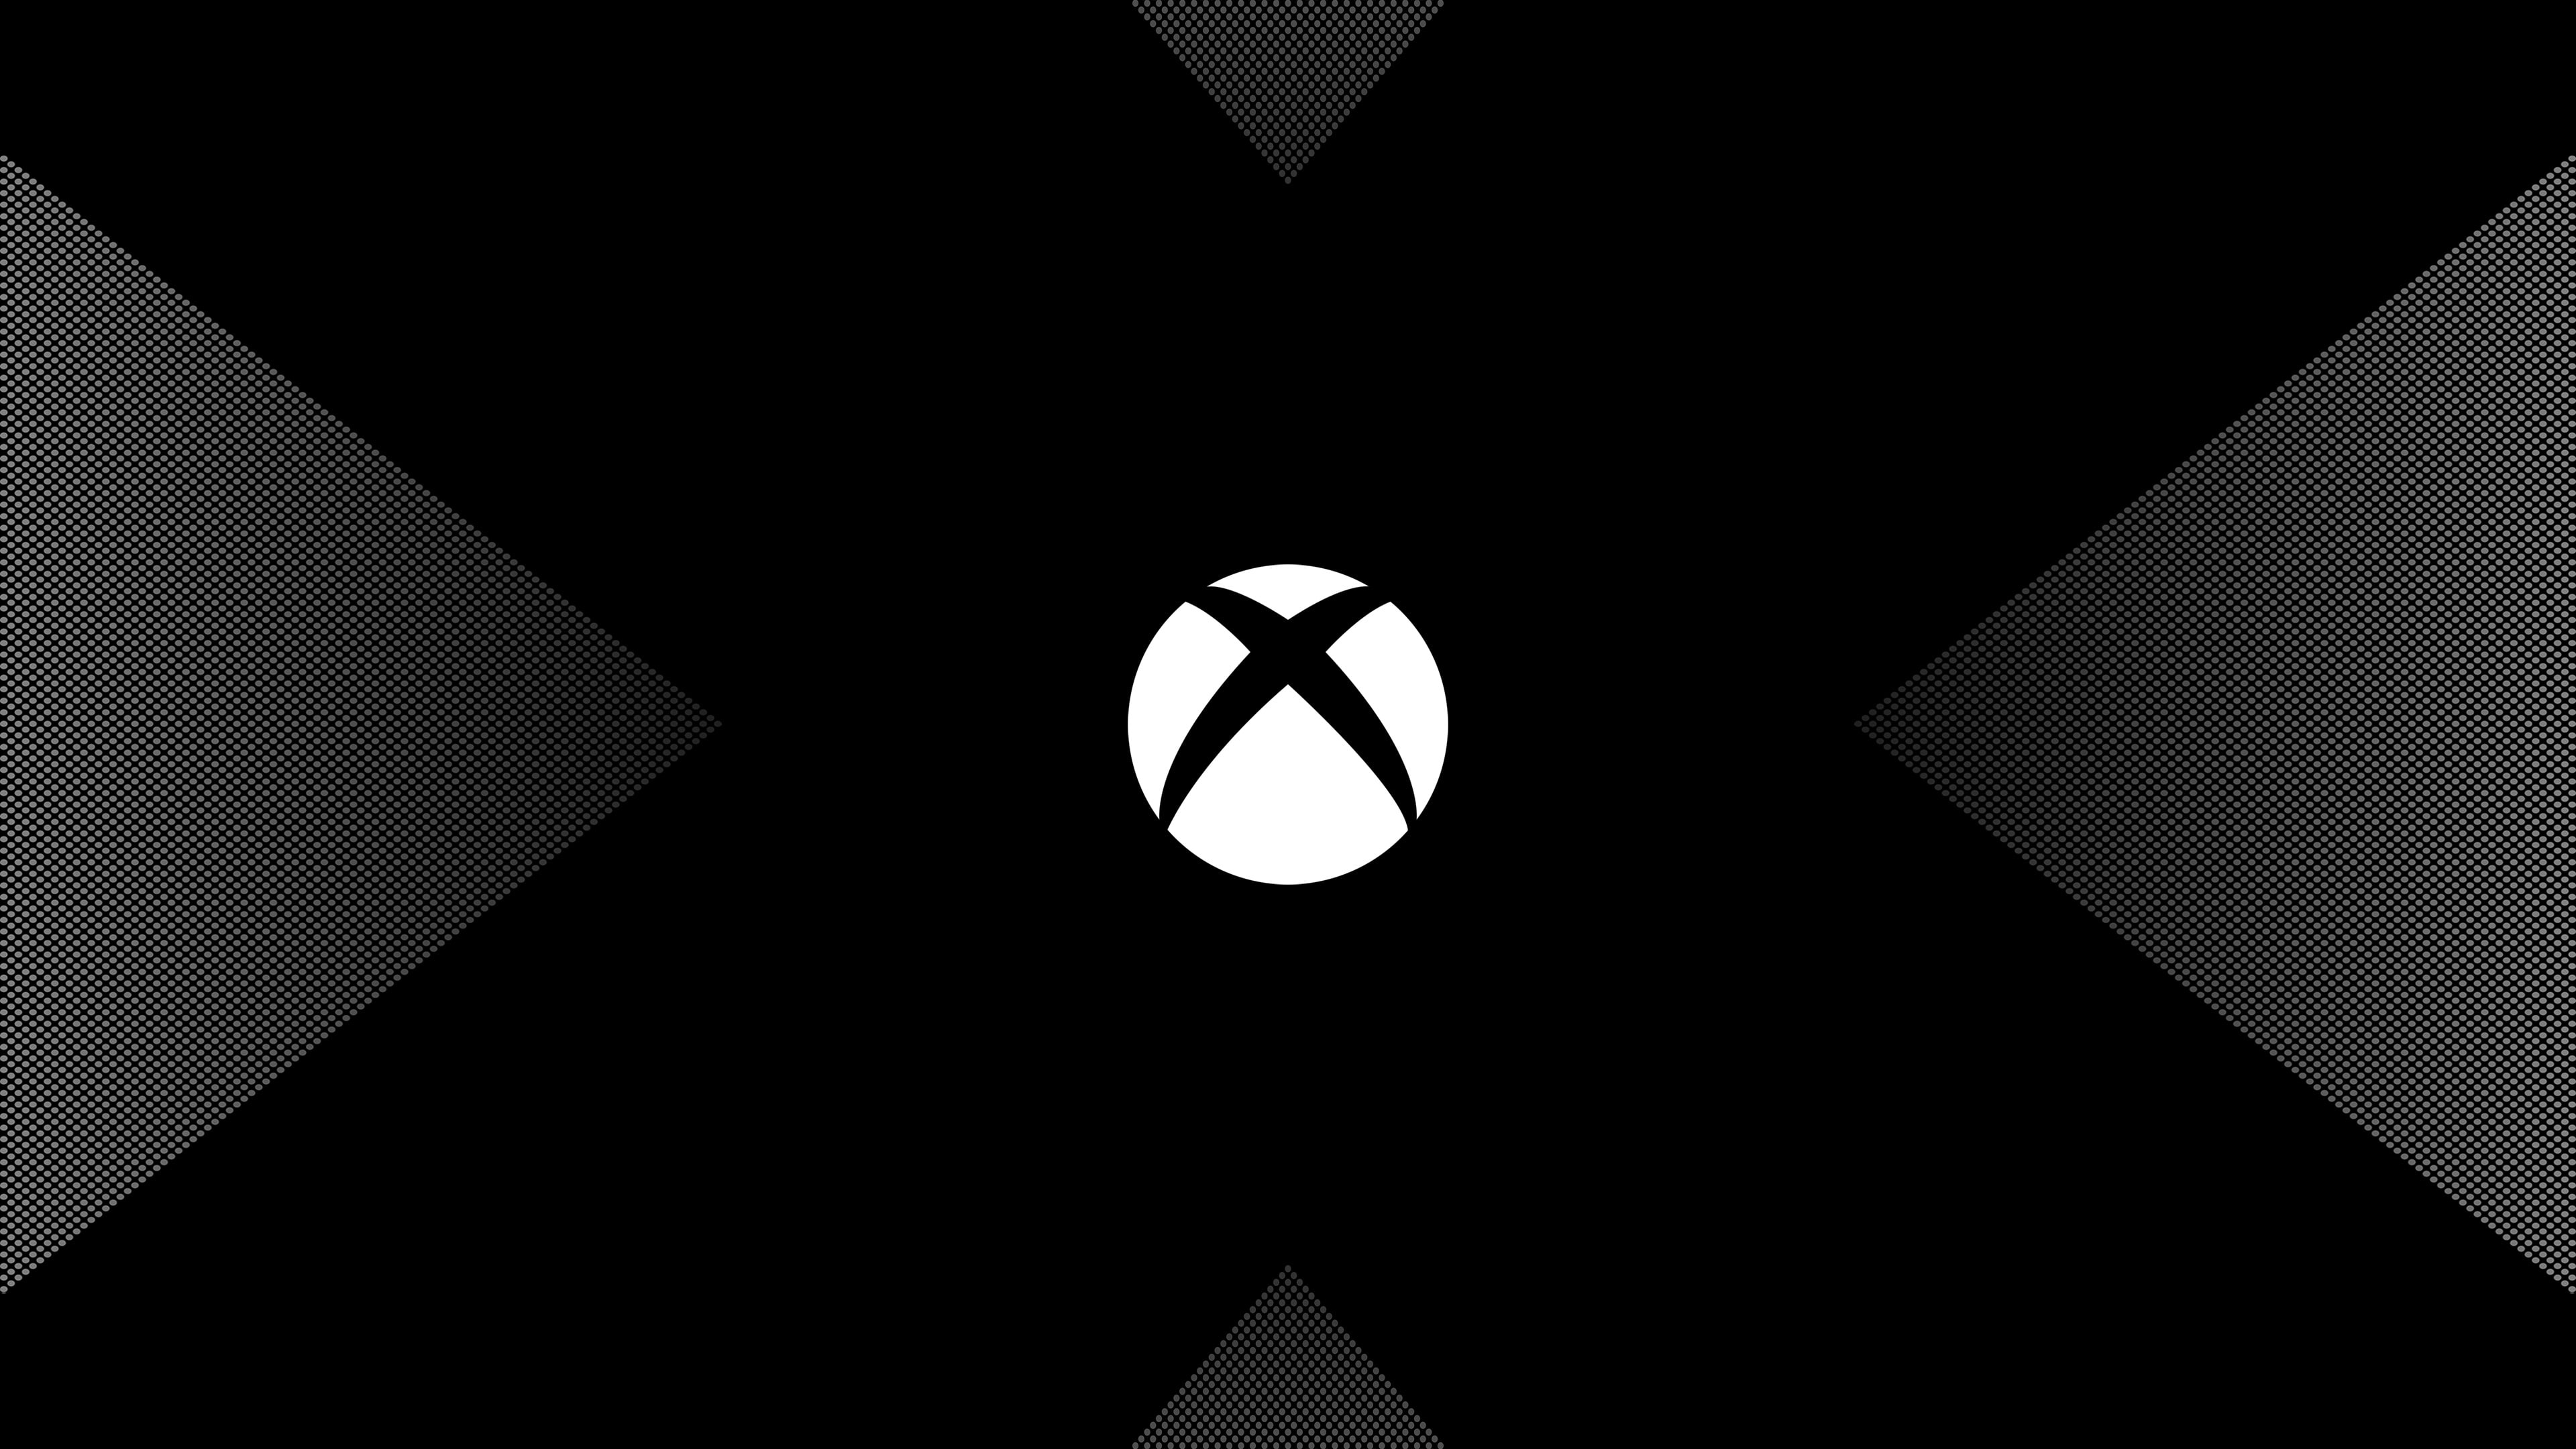 Xbox One X logo 4K